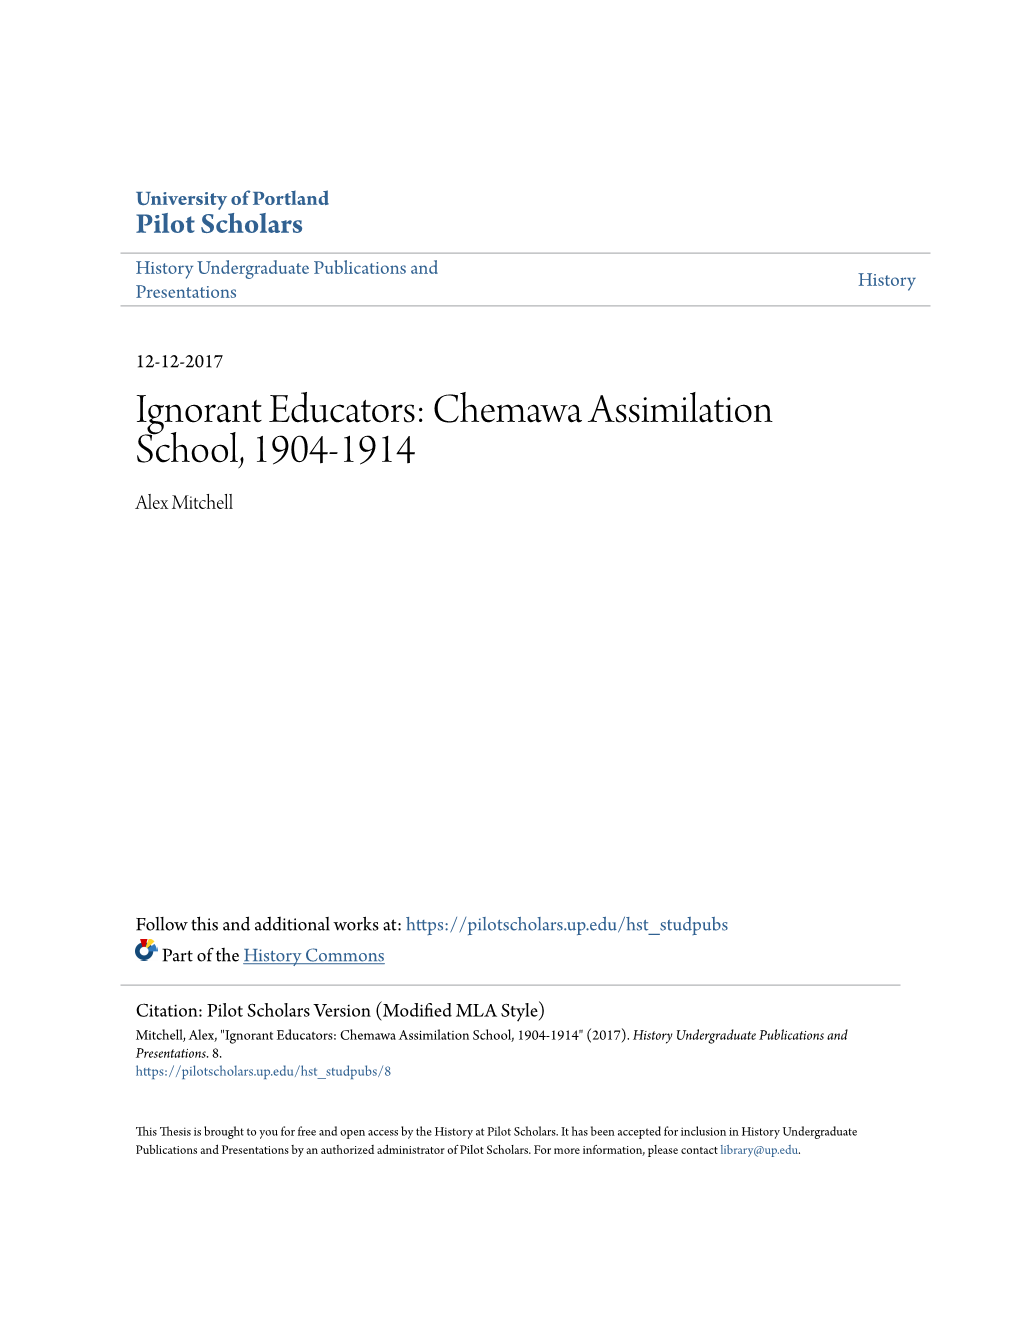 Ignorant Educators: Chemawa Assimilation School, 1904-1914 Alex Mitchell